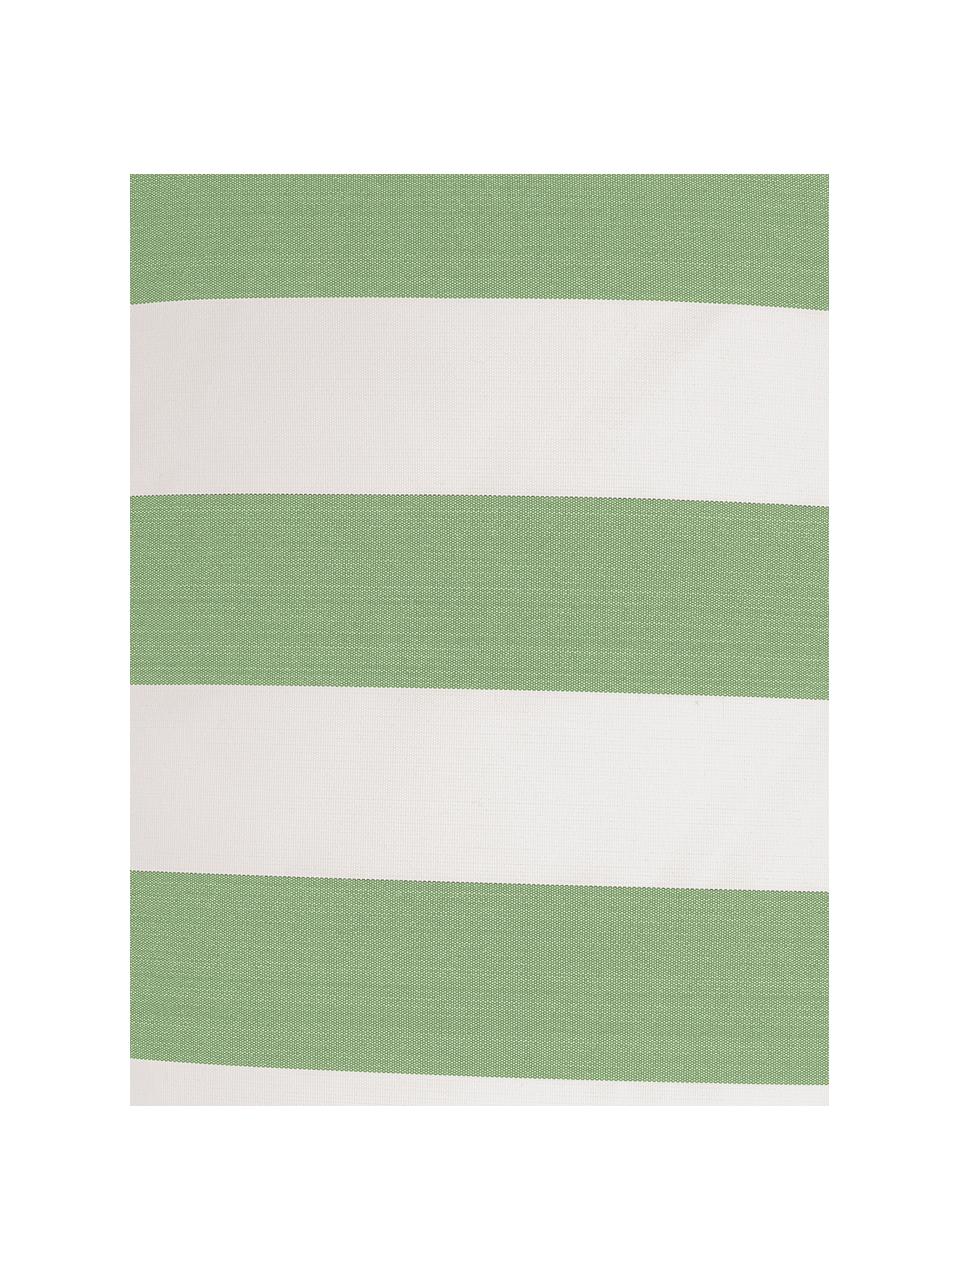 Gestreepte outdoor kussenhoes Santorin in groen/wit, 100% polypropyleen, Teflon® gecoat, Groen, wit, 40 x 60 cm